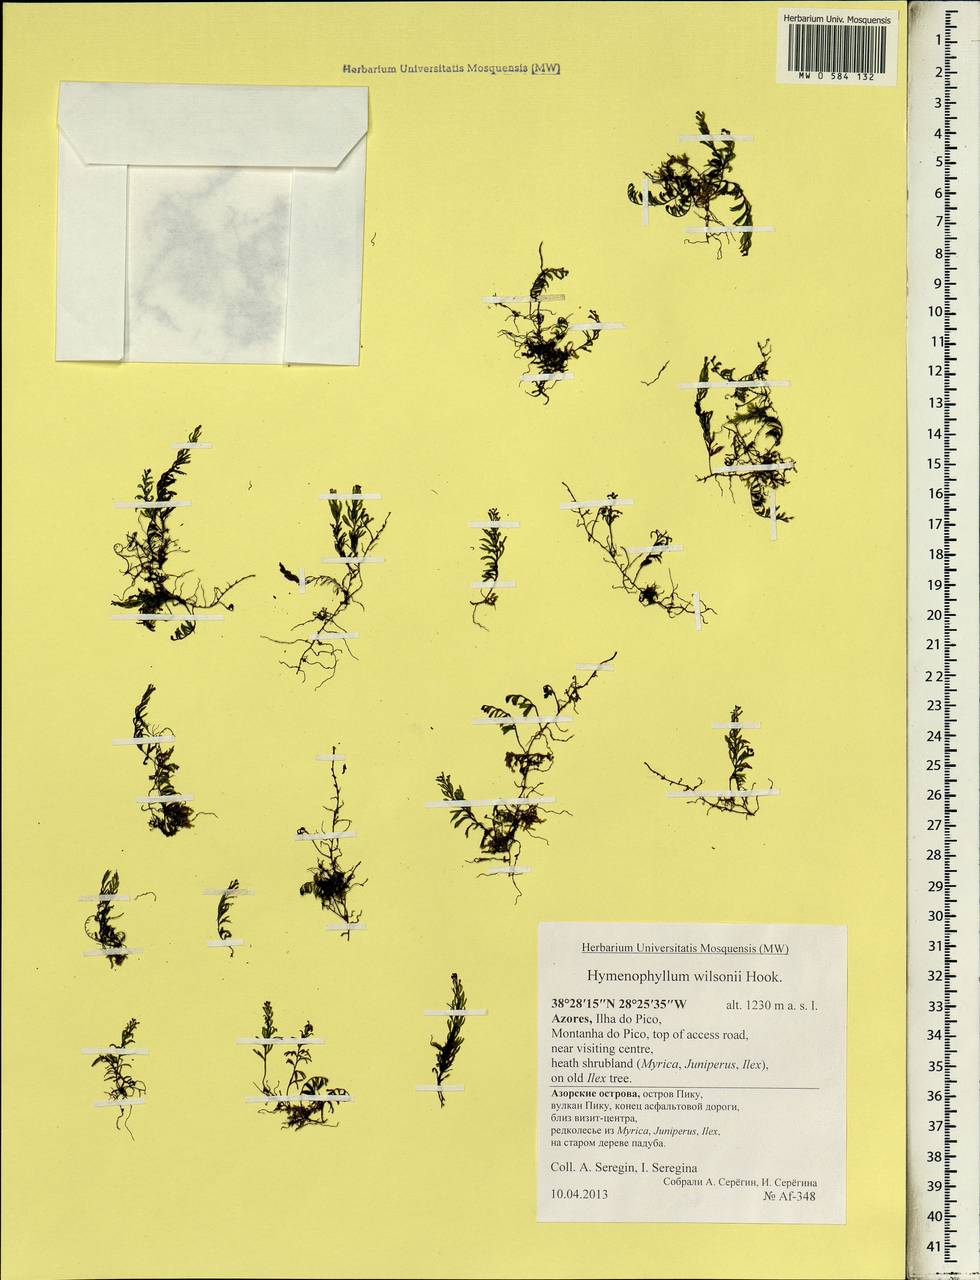 Hymenophyllum wilsonii Hook., Африка (AFR) (Португалия)